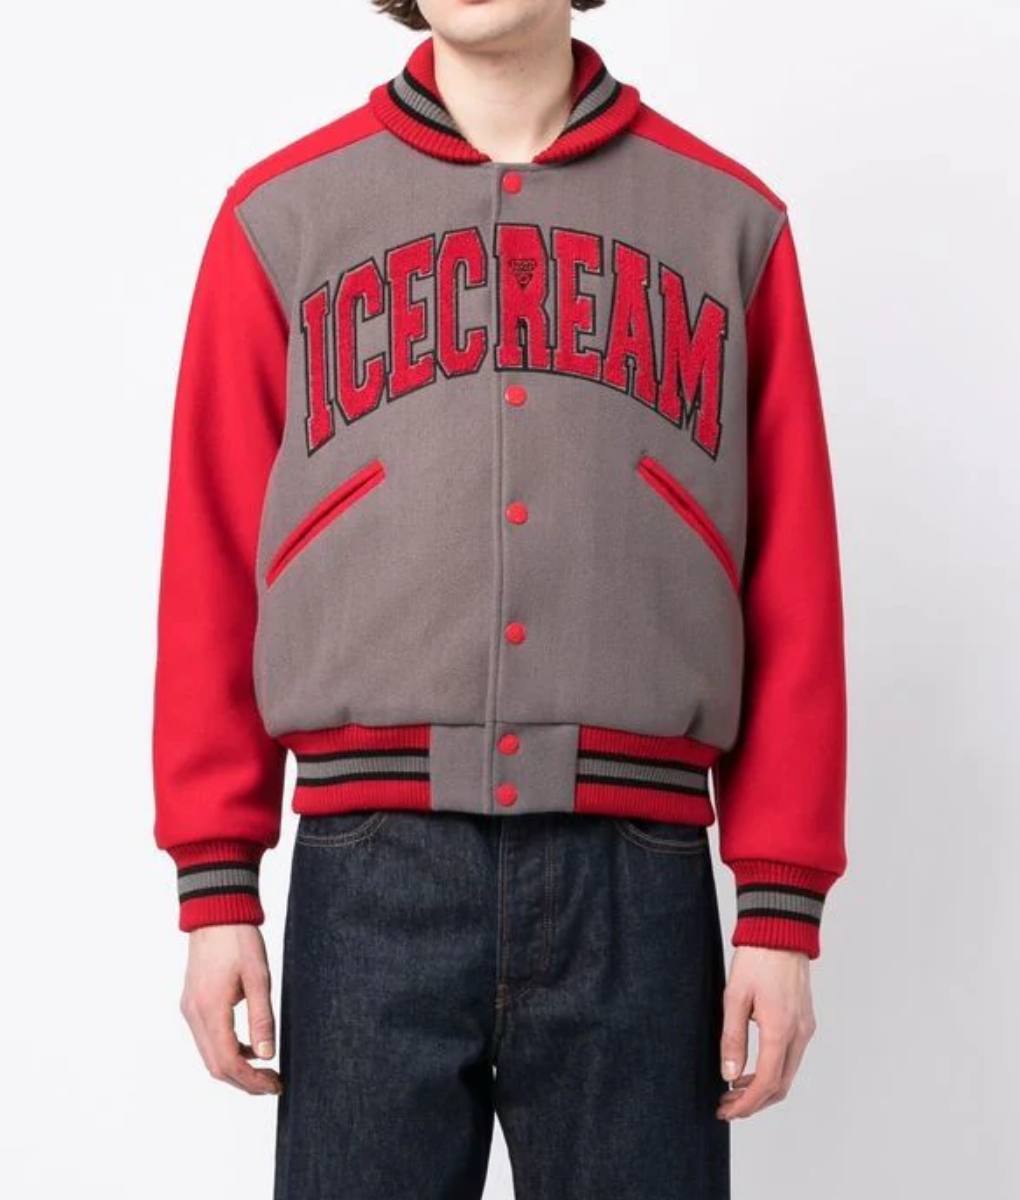 ICECREAM Gray and Red Varsity Jacket (6)